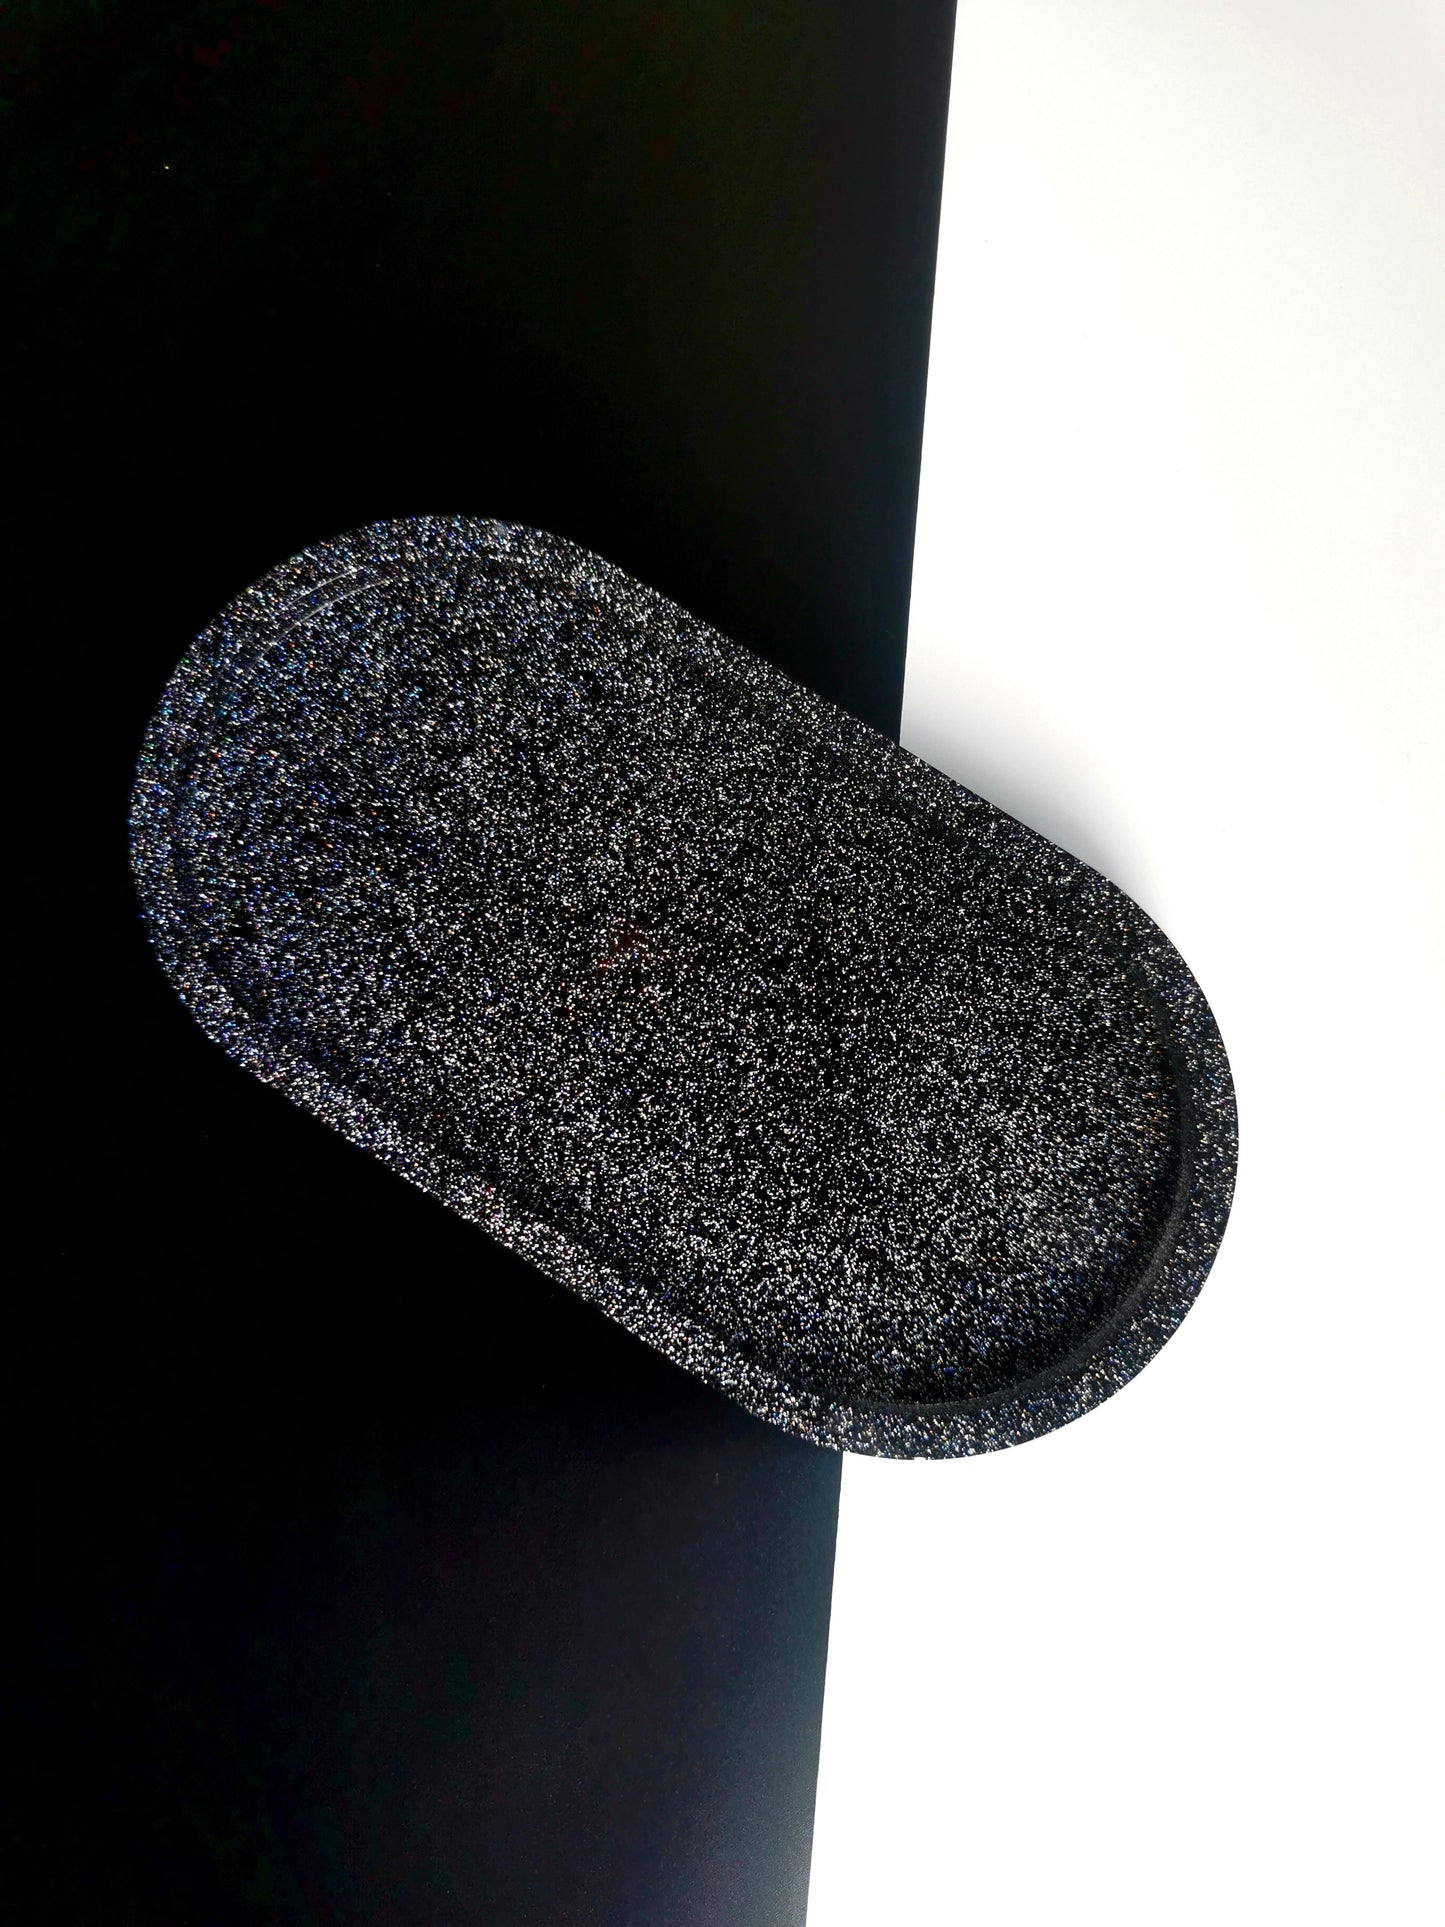 Black glitter soap dish - WulfhedMtl